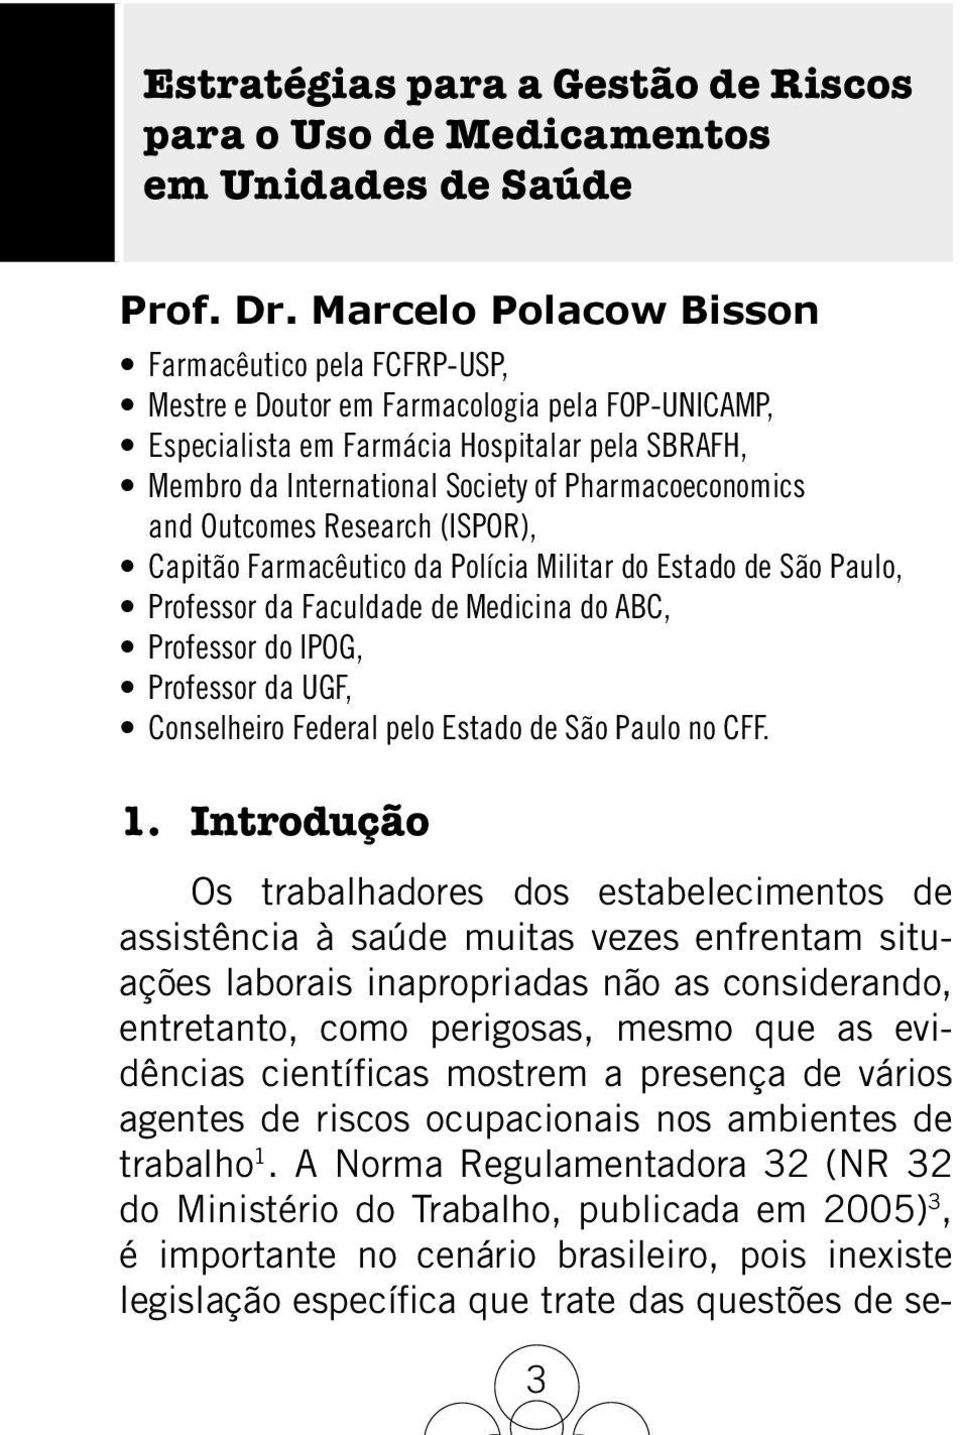 Pharmacoeconomics and Outcomes Research (ISPOR), Capitão Farmacêutico da Polícia Militar do Estado de São Paulo, Professor da Faculdade de Medicina do ABC, Professor do IPOG, Professor da UGF,